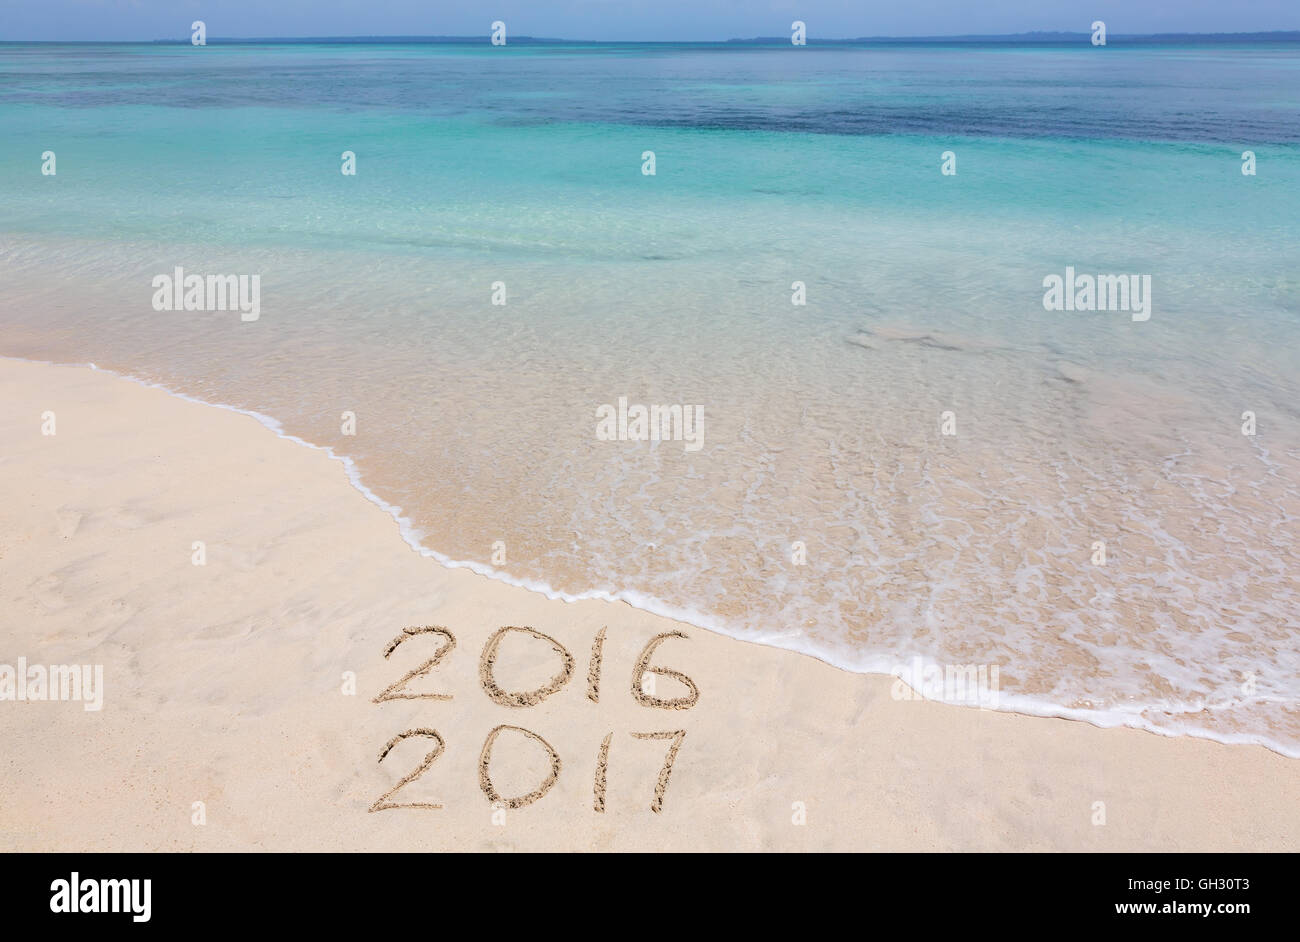 Années 2016 et 2017 sont inscrits sur la plage de sable Banque D'Images